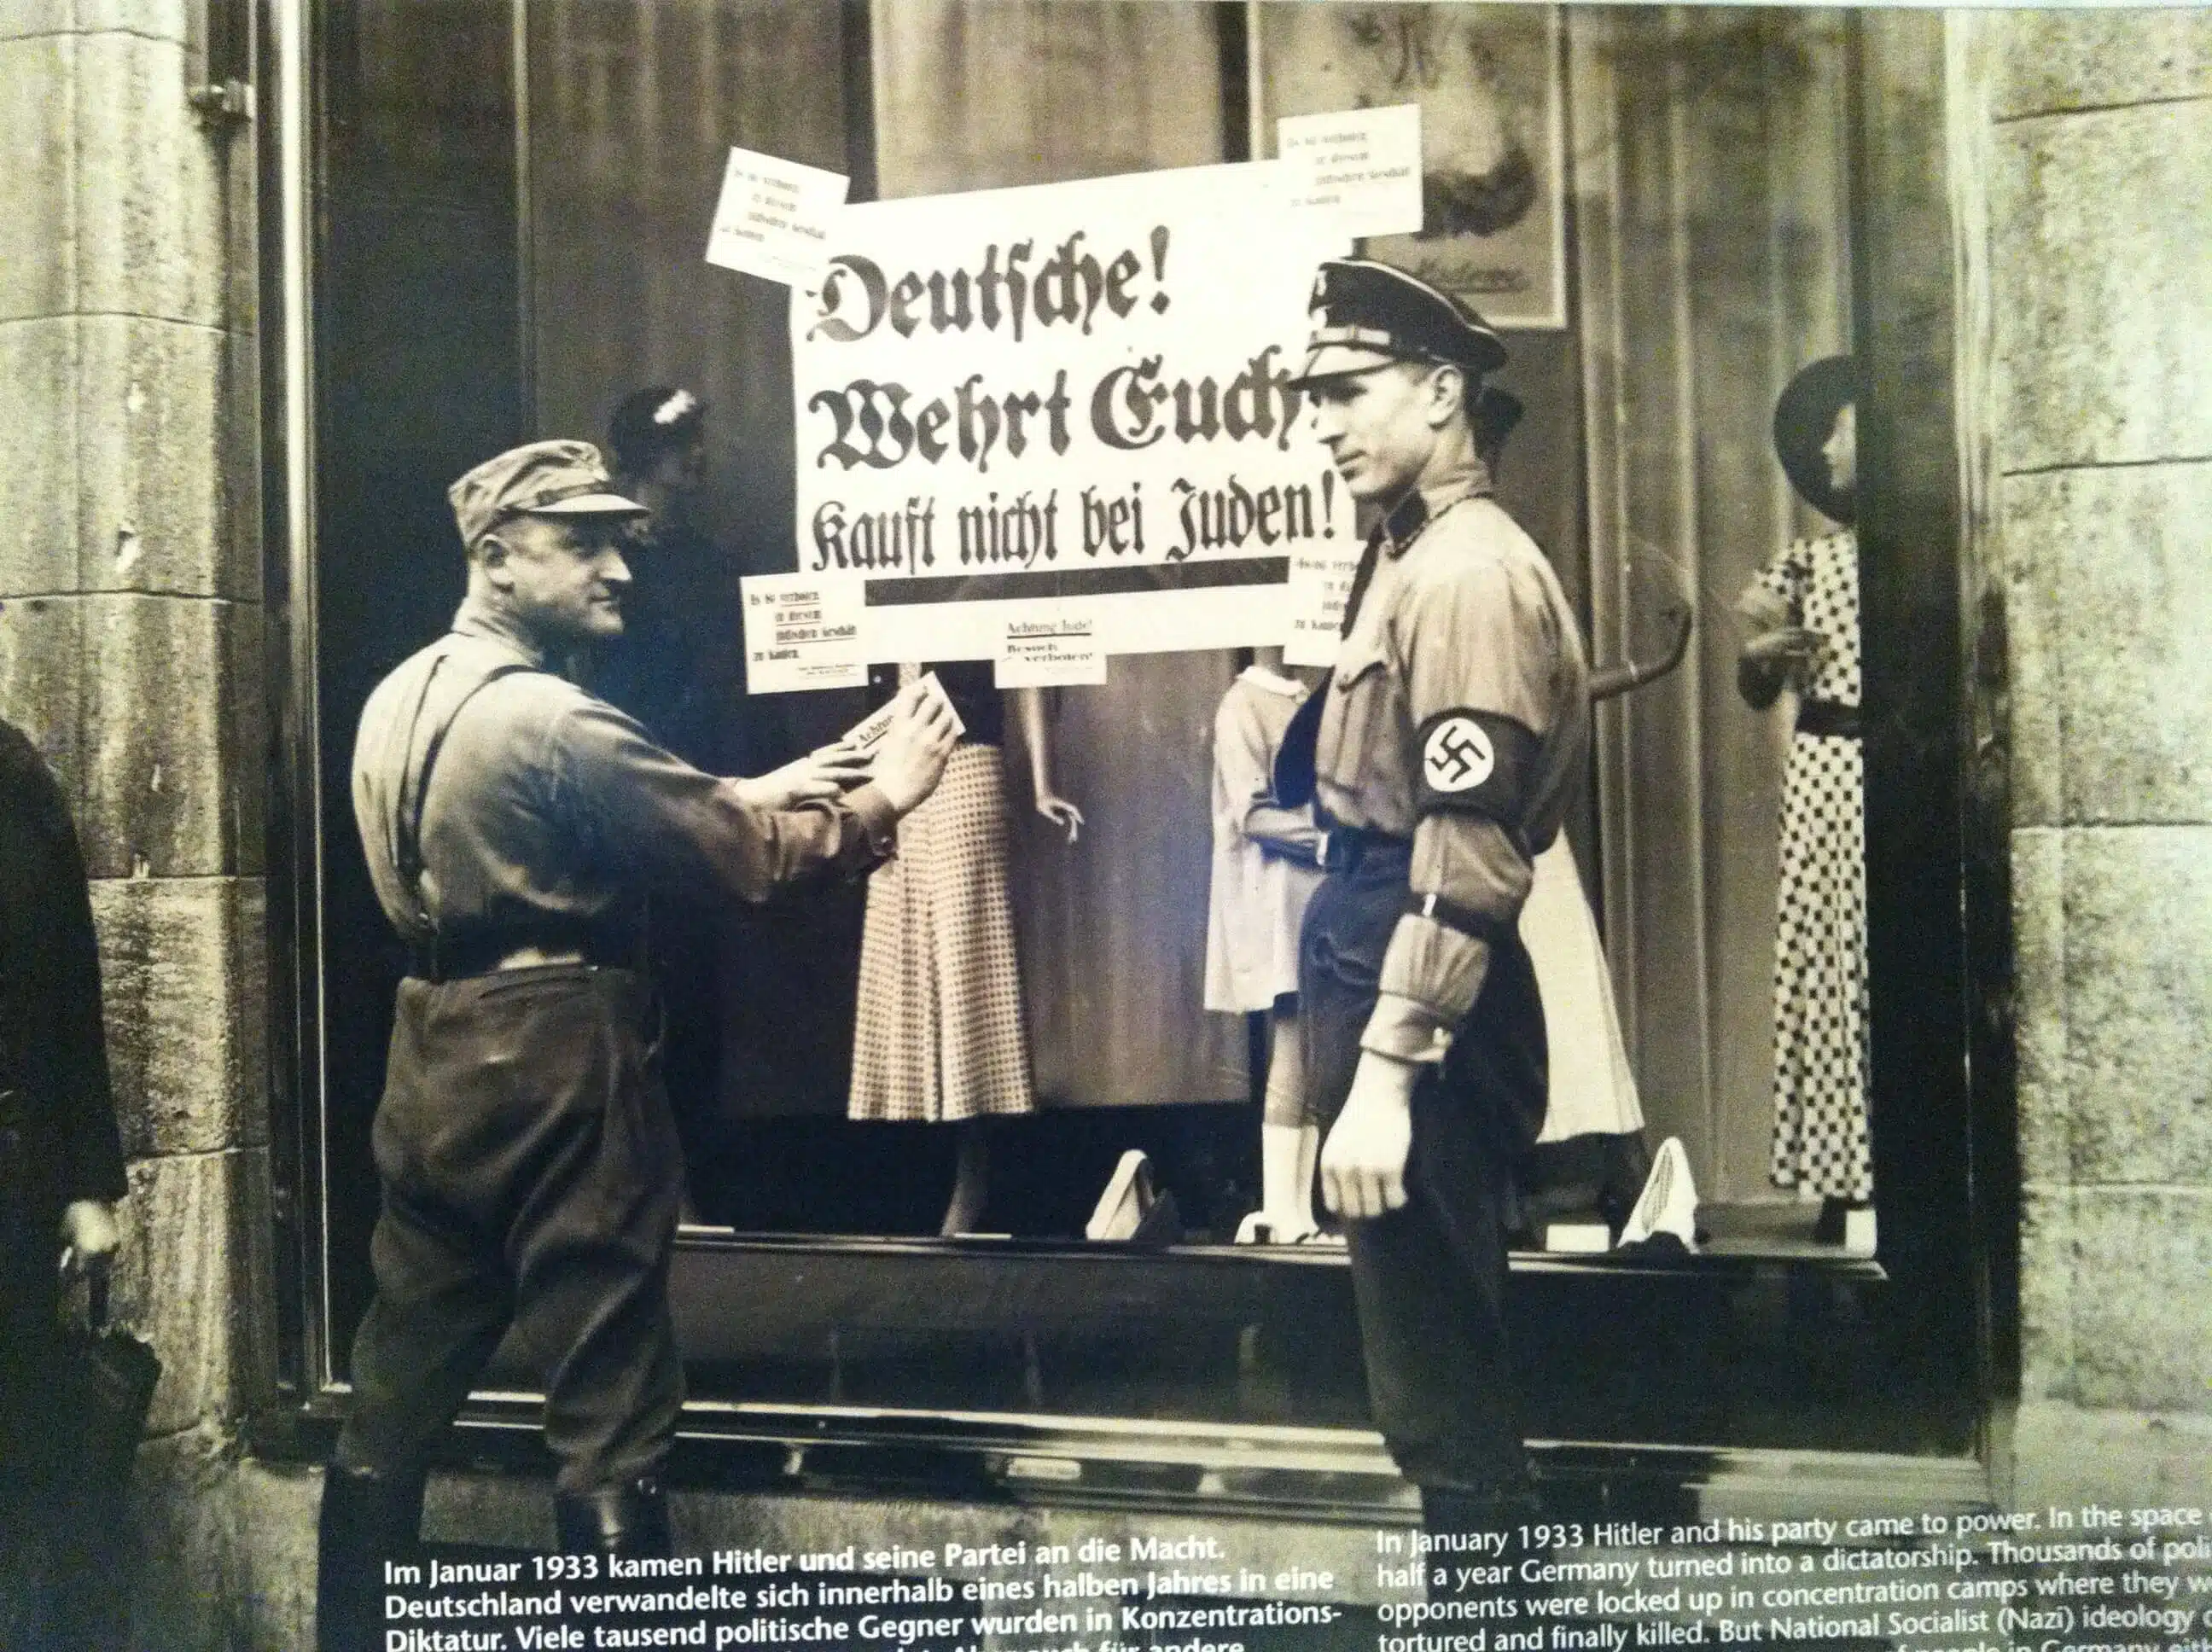 תמונה של תליית שלט האוסר על רכישה בחנויות של יהודים ערב מלחמ העולם השניה. צולמה בביקור במוזיאון לזכרה של אנה פרנק בברלין., מארס 2013.